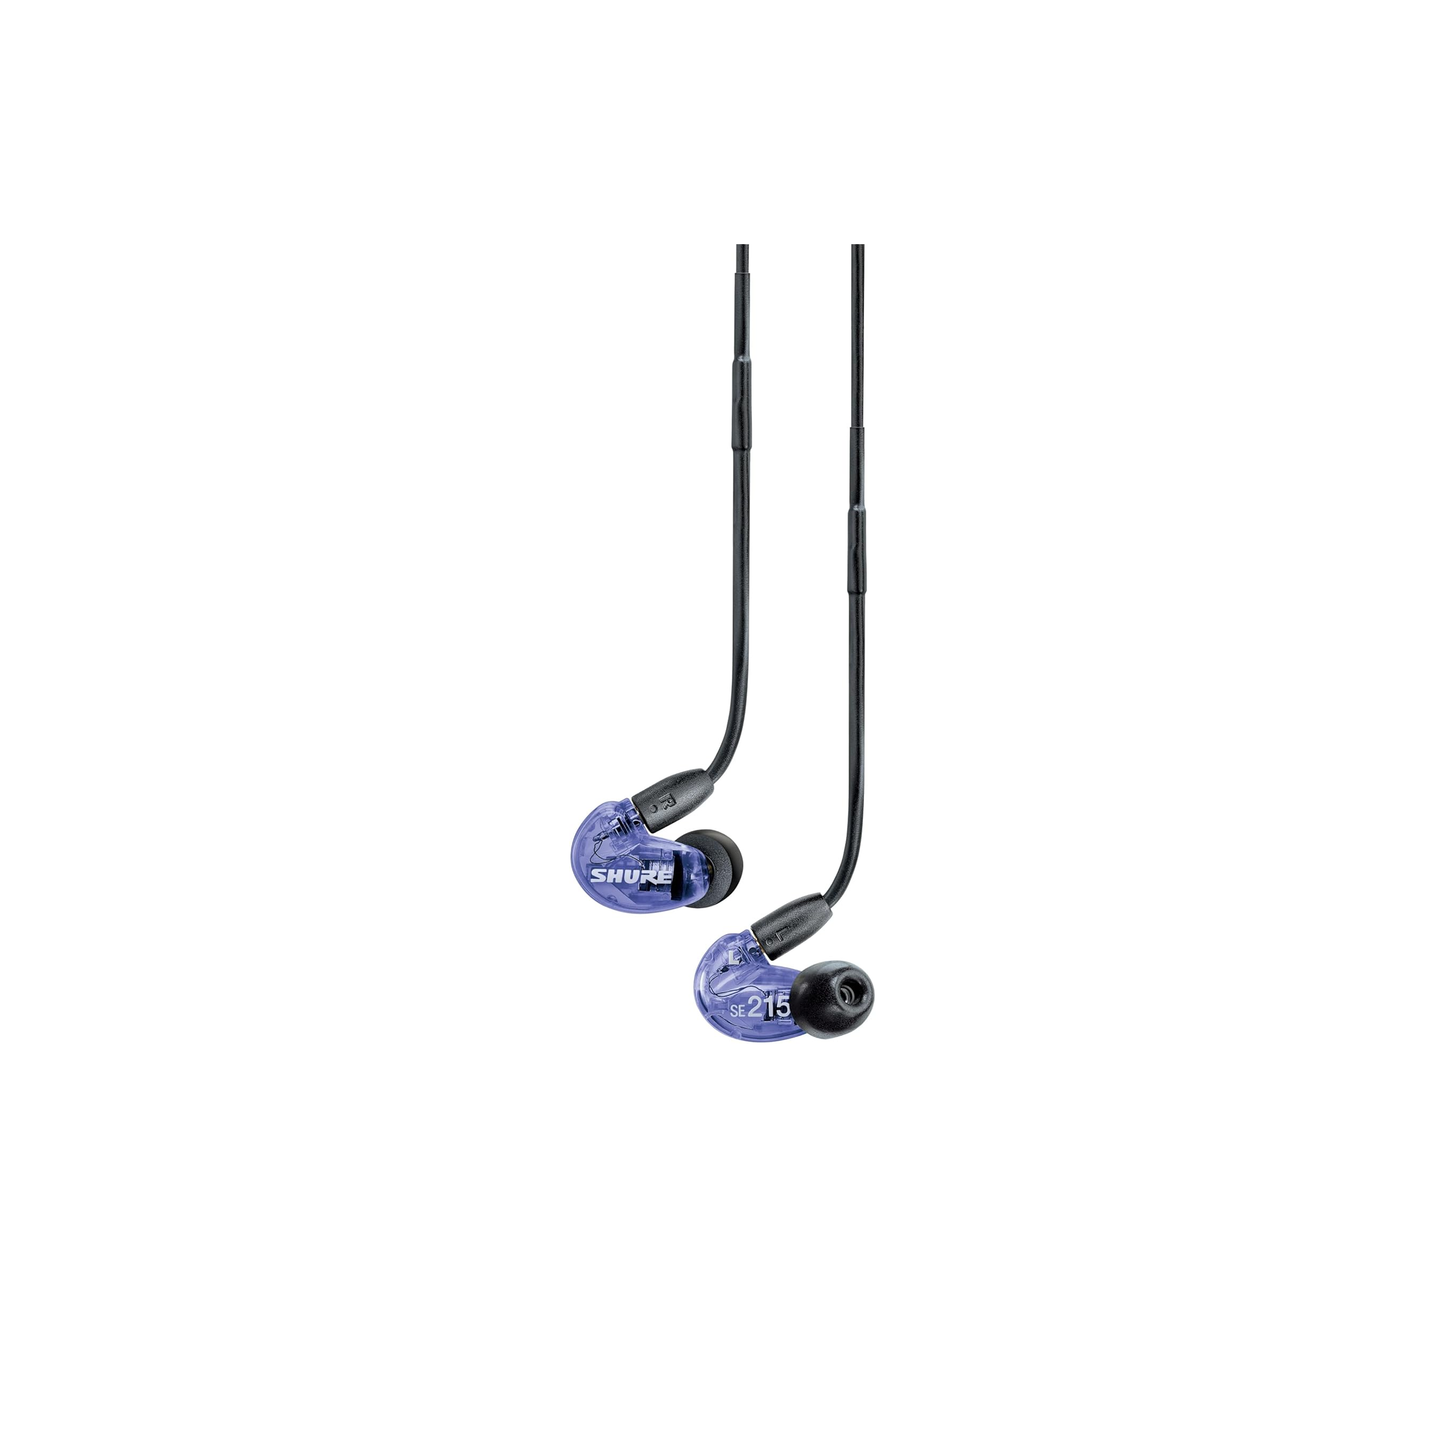 سماعات أذن سلكية من Shure SE215 إصدار خاص PRO - سماعات عزل صوت احترافية، صوت واضح وجهير عميق، محرك MicroDriver ديناميكي فردي، رائع للموسيقى والألعاب والمكالمات - أرجواني 